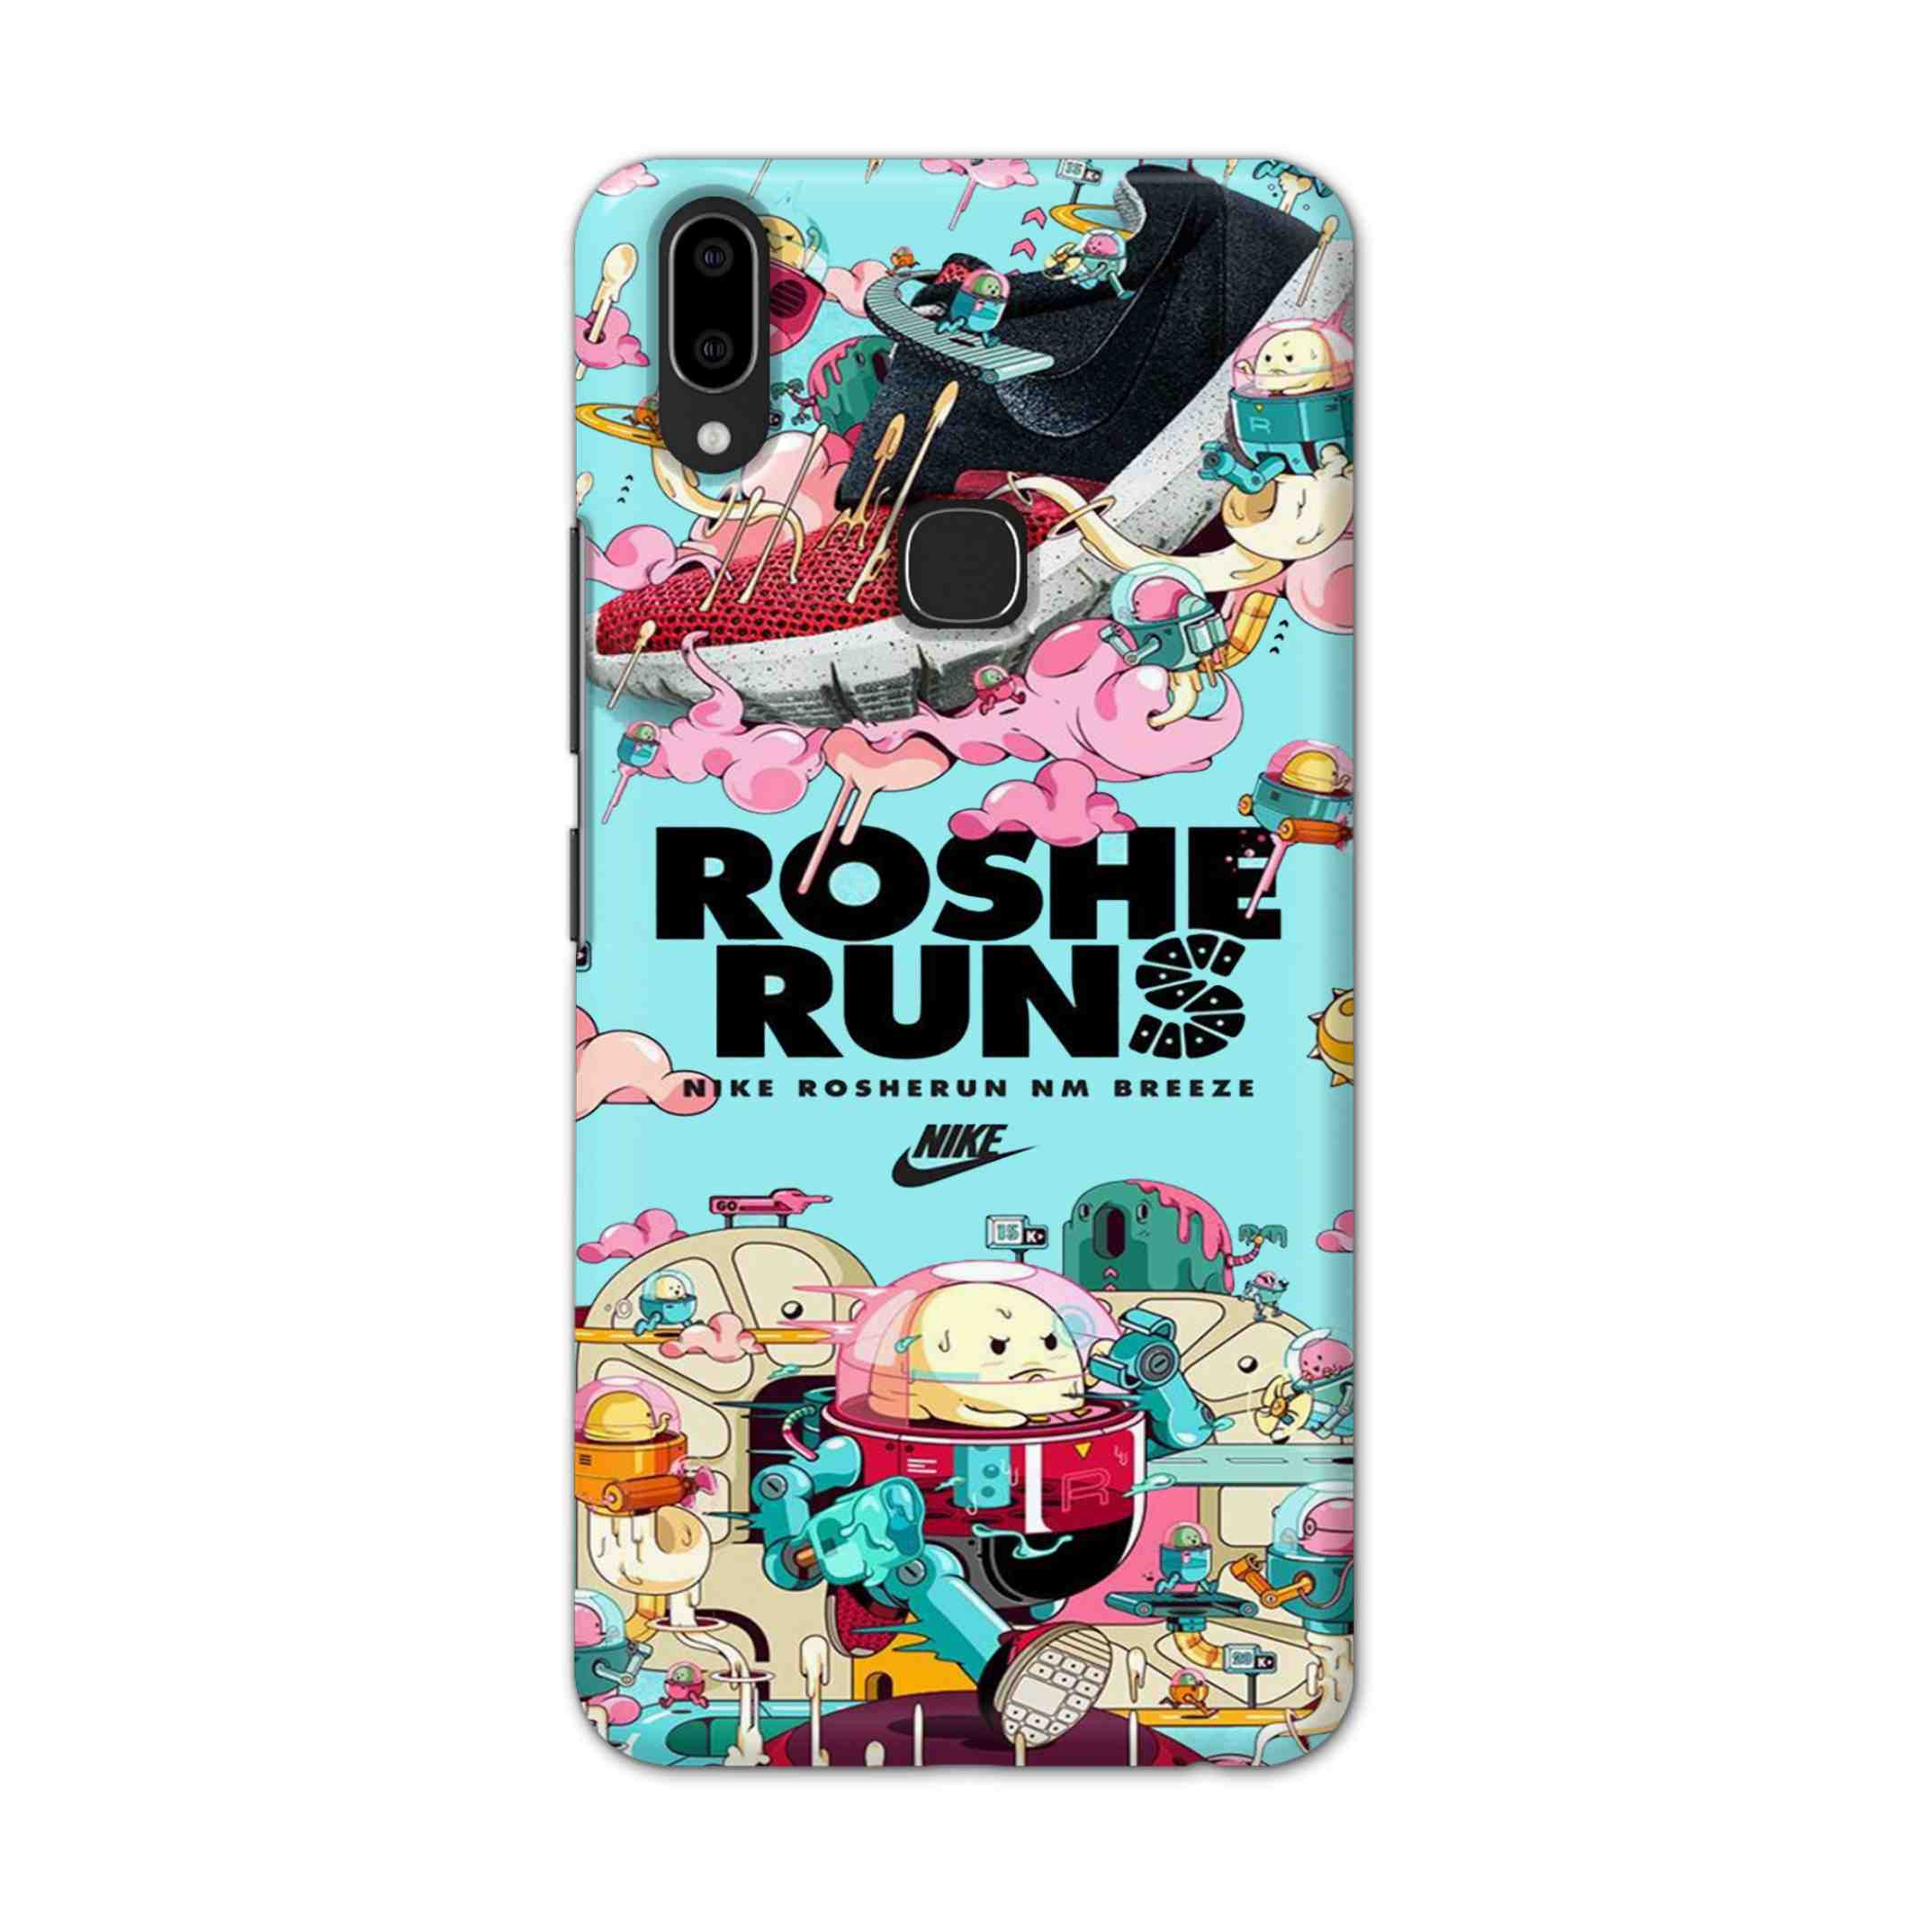 Buy Roshe Runs Hard Back Mobile Phone Case Cover For Vivo V9 / V9 Youth Online